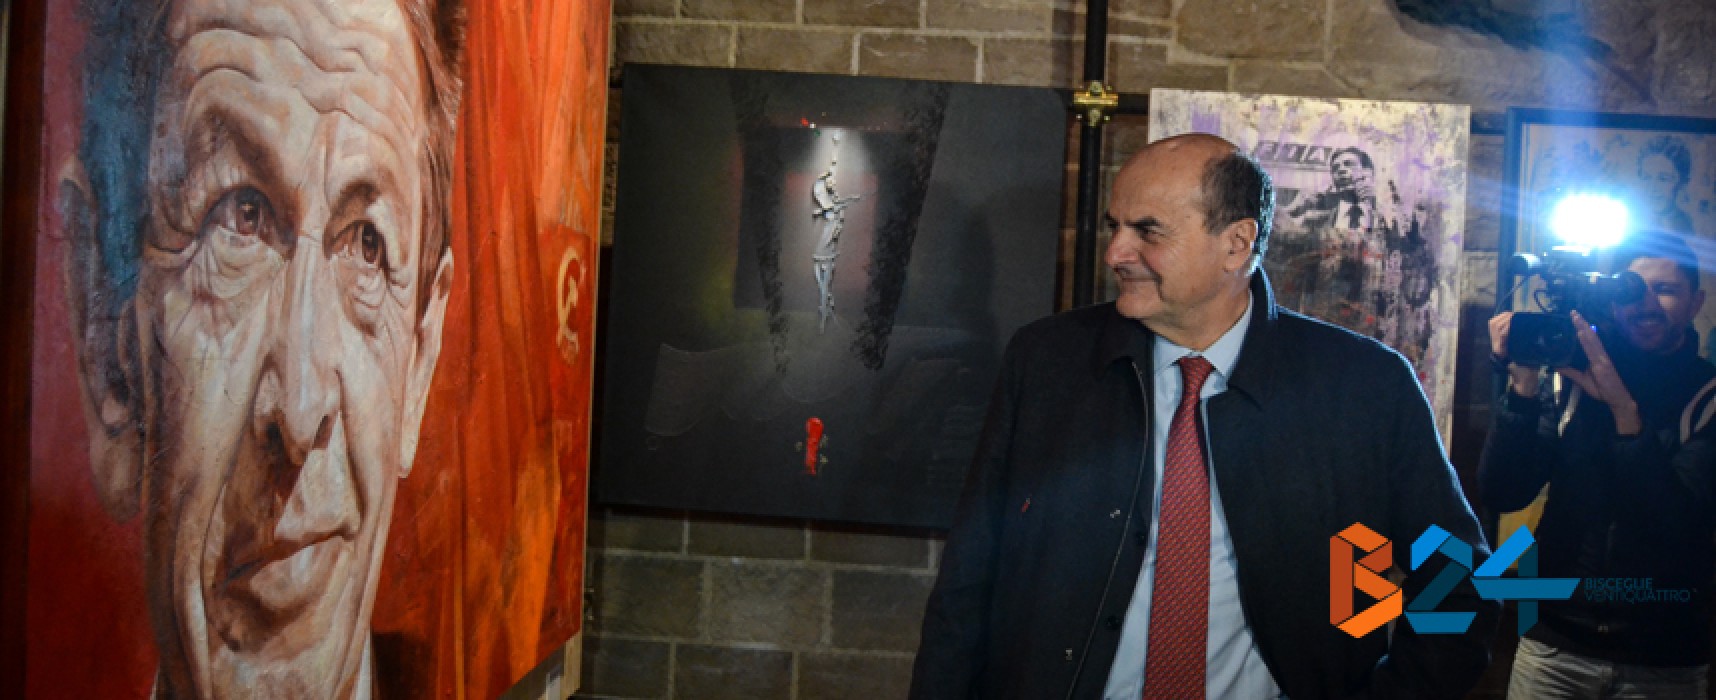 Inaugurata la mostra su Berlinguer, Bersani: “Giovani dimostrino che può esistere una politica pulita” / FOTO